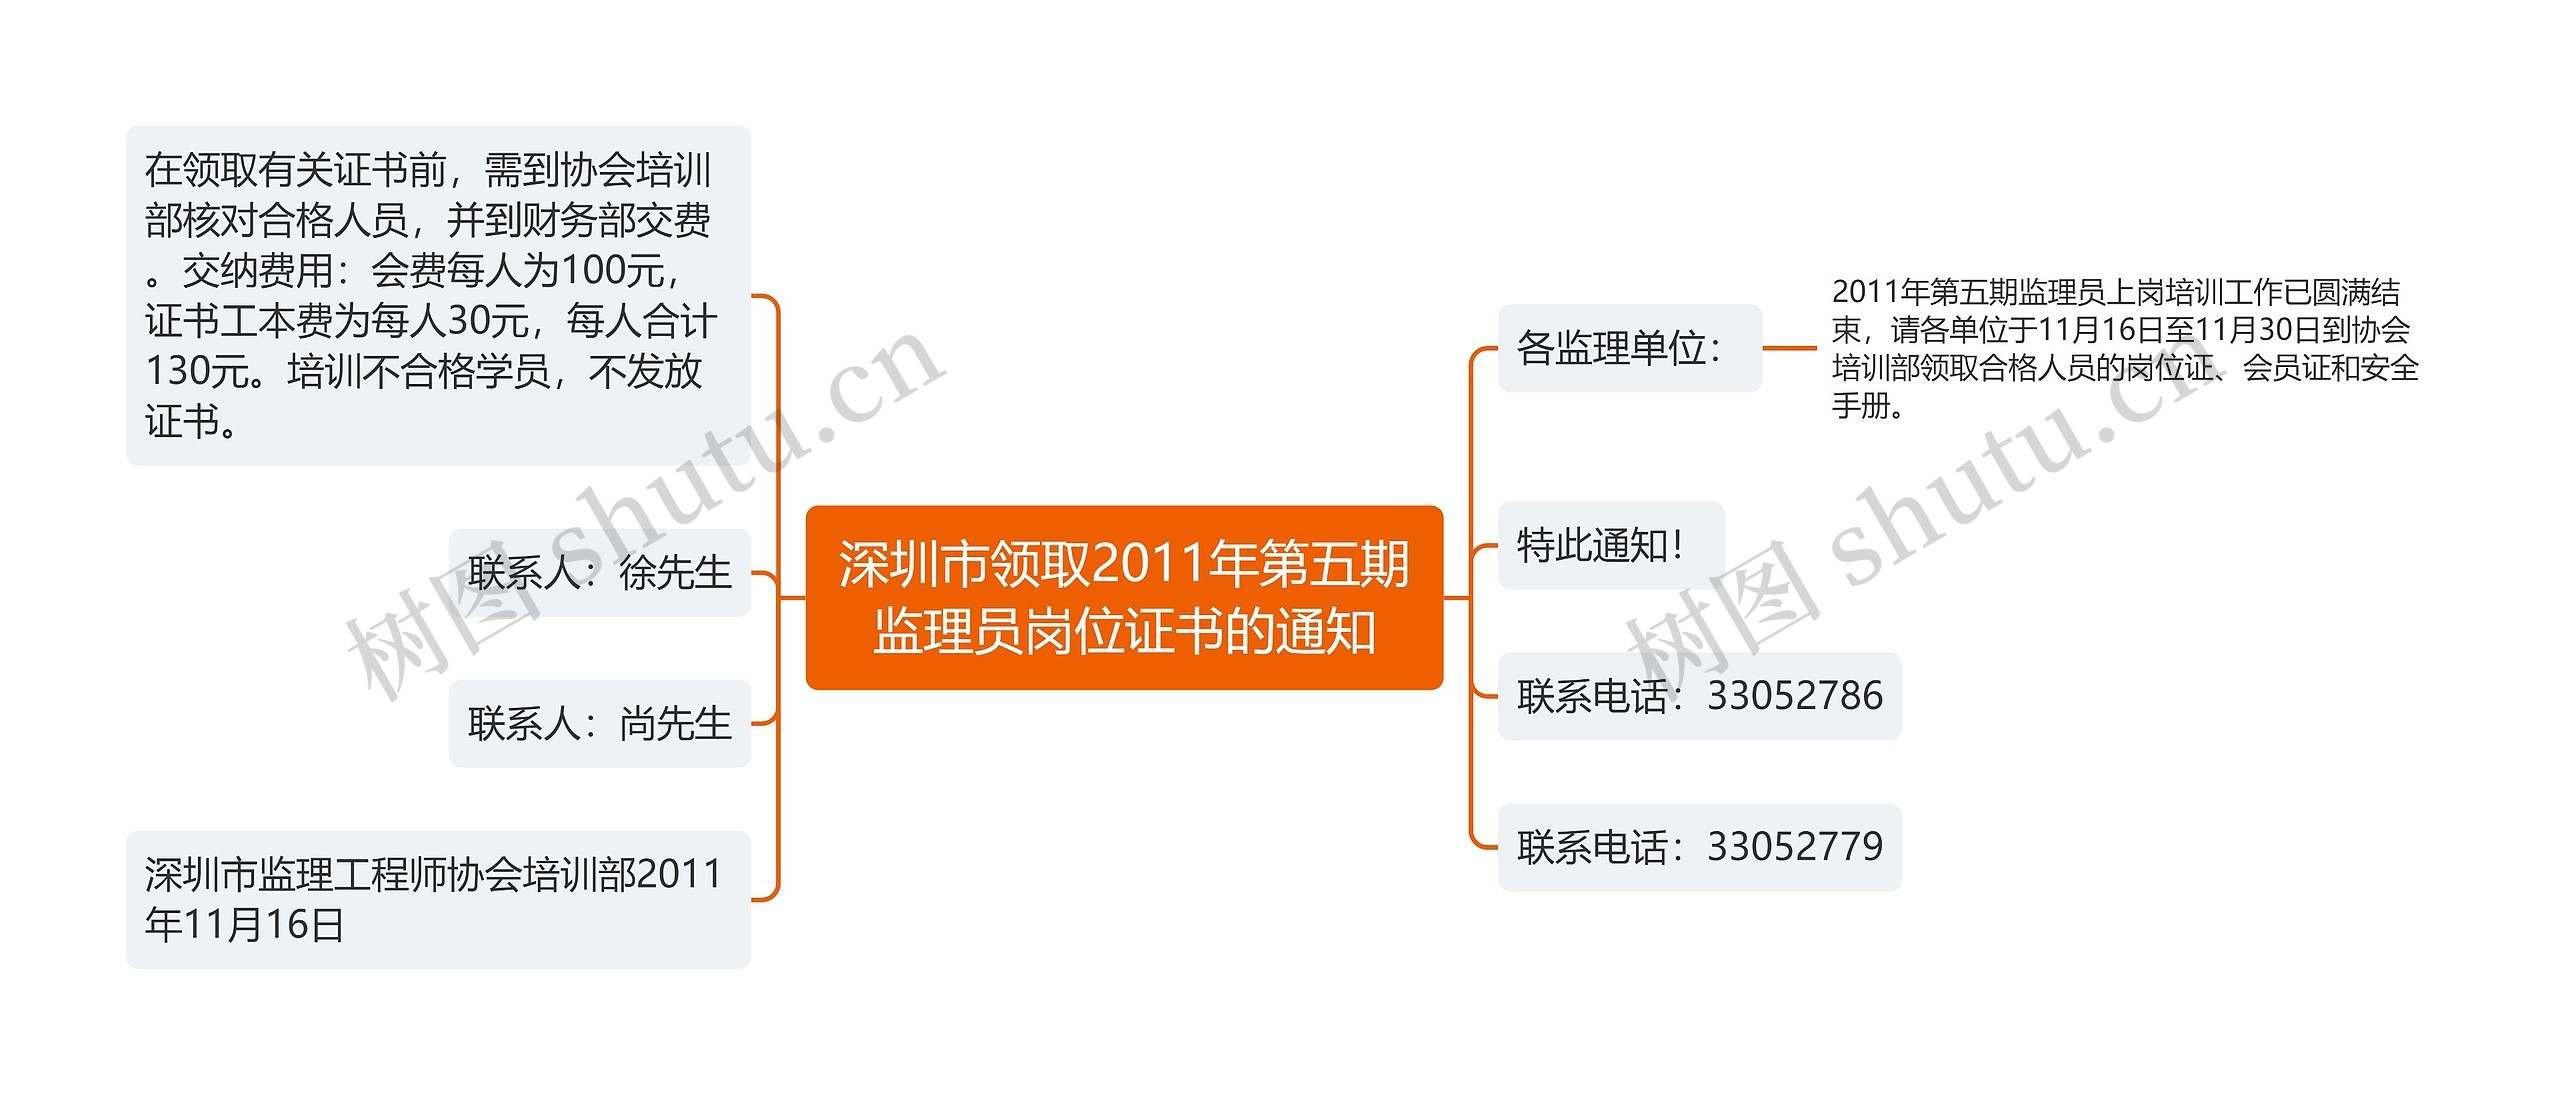 深圳市领取2011年第五期监理员岗位证书的通知